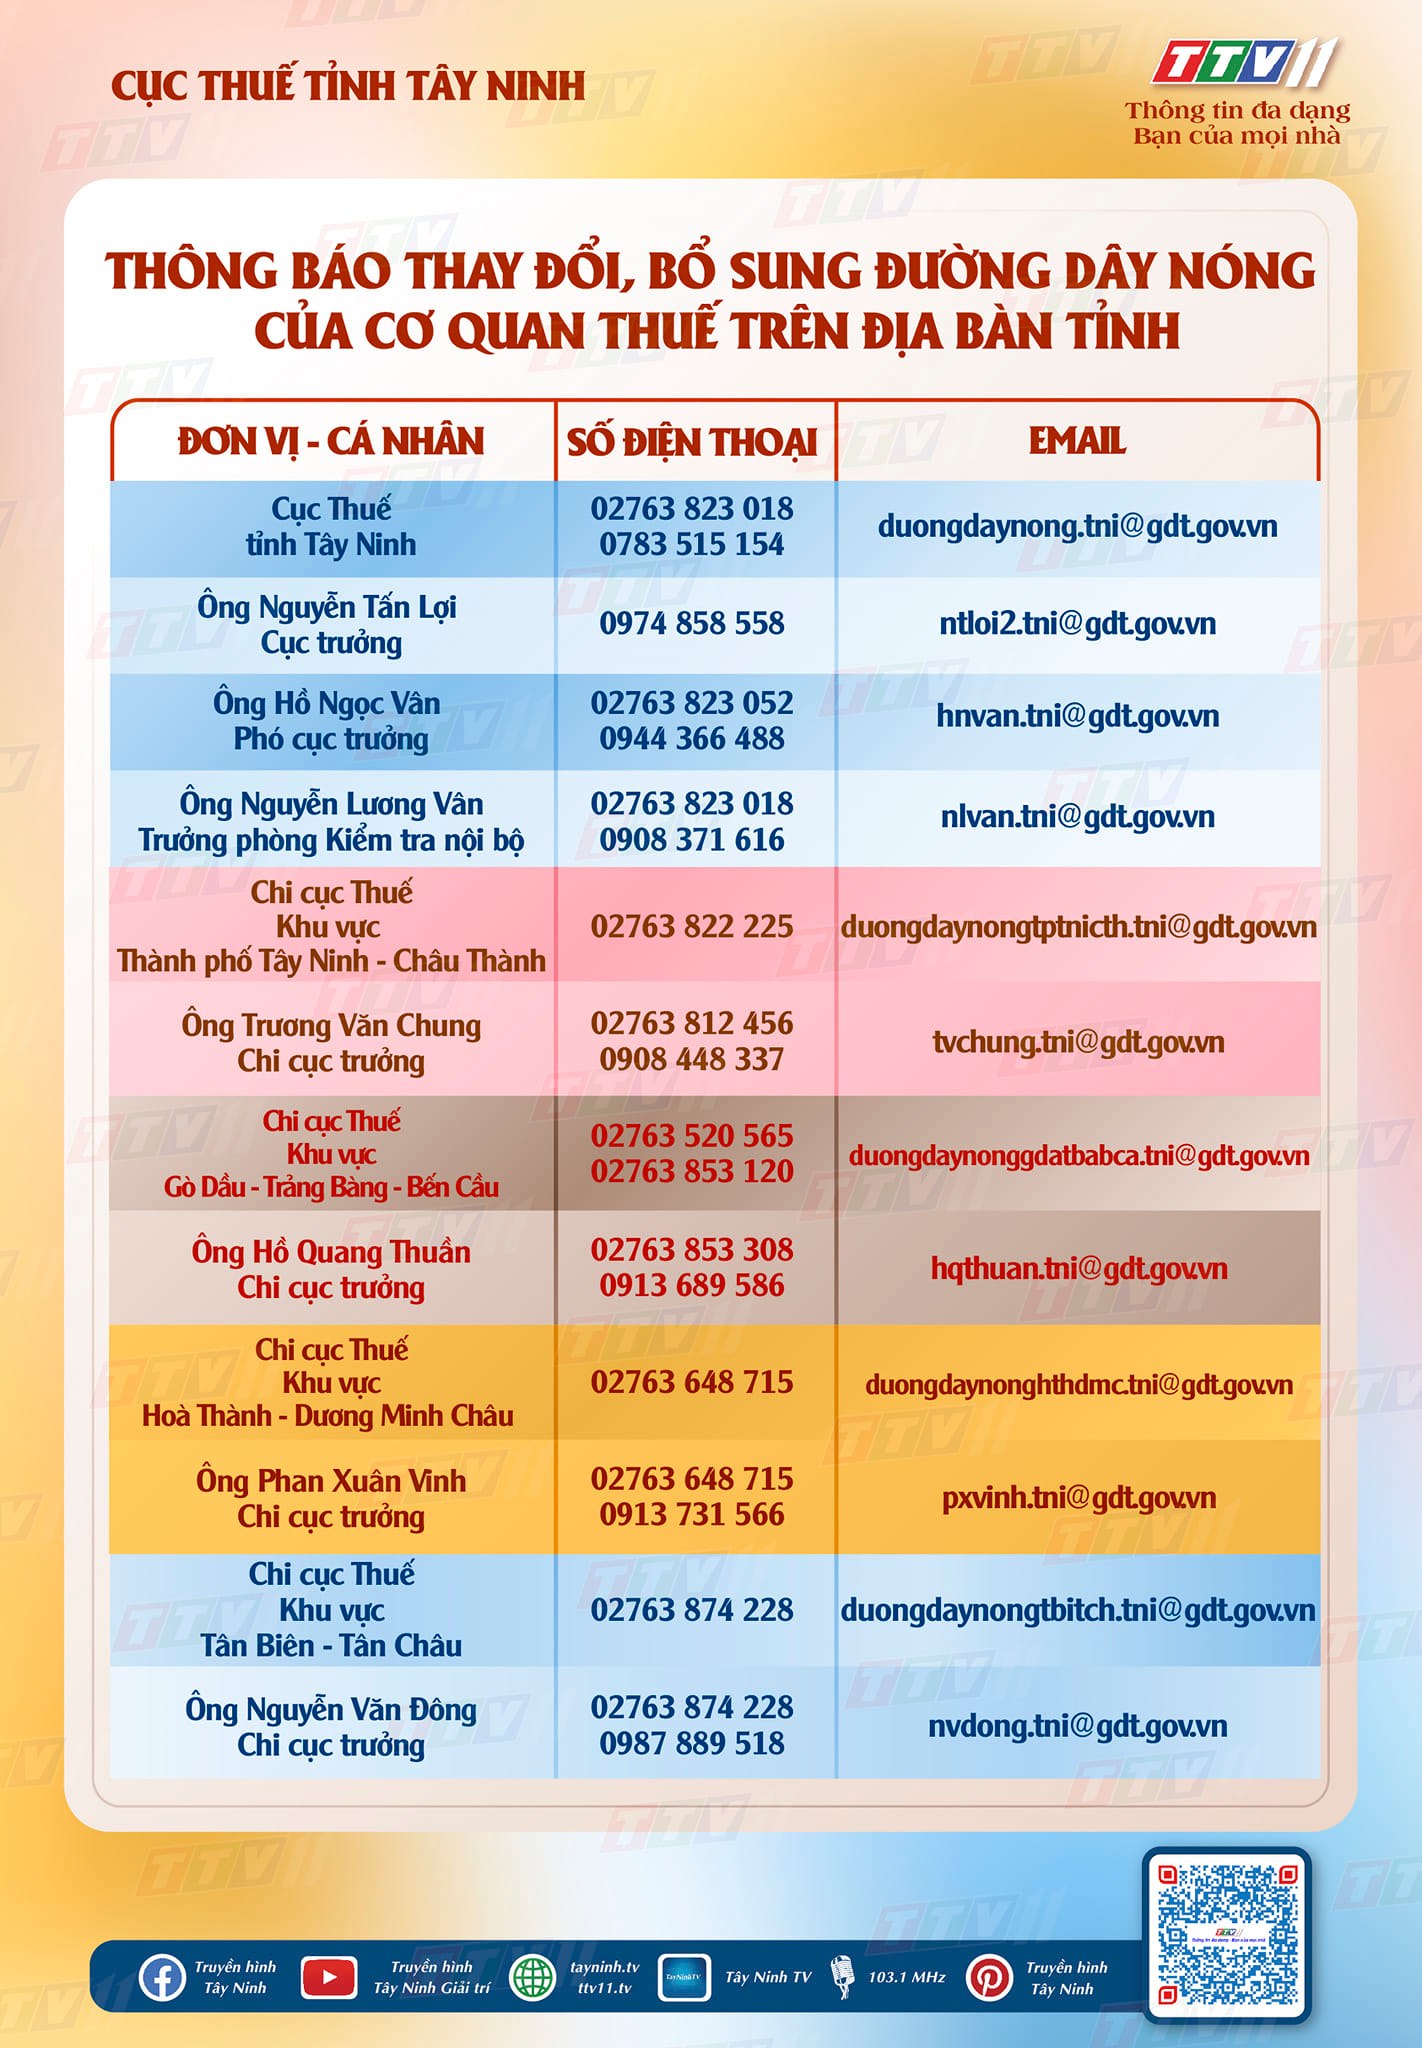 Thông báo thay đổi, bổ sung đường dây nóng của cơ quan thuế trên địa bàn tỉnh Tây Ninh